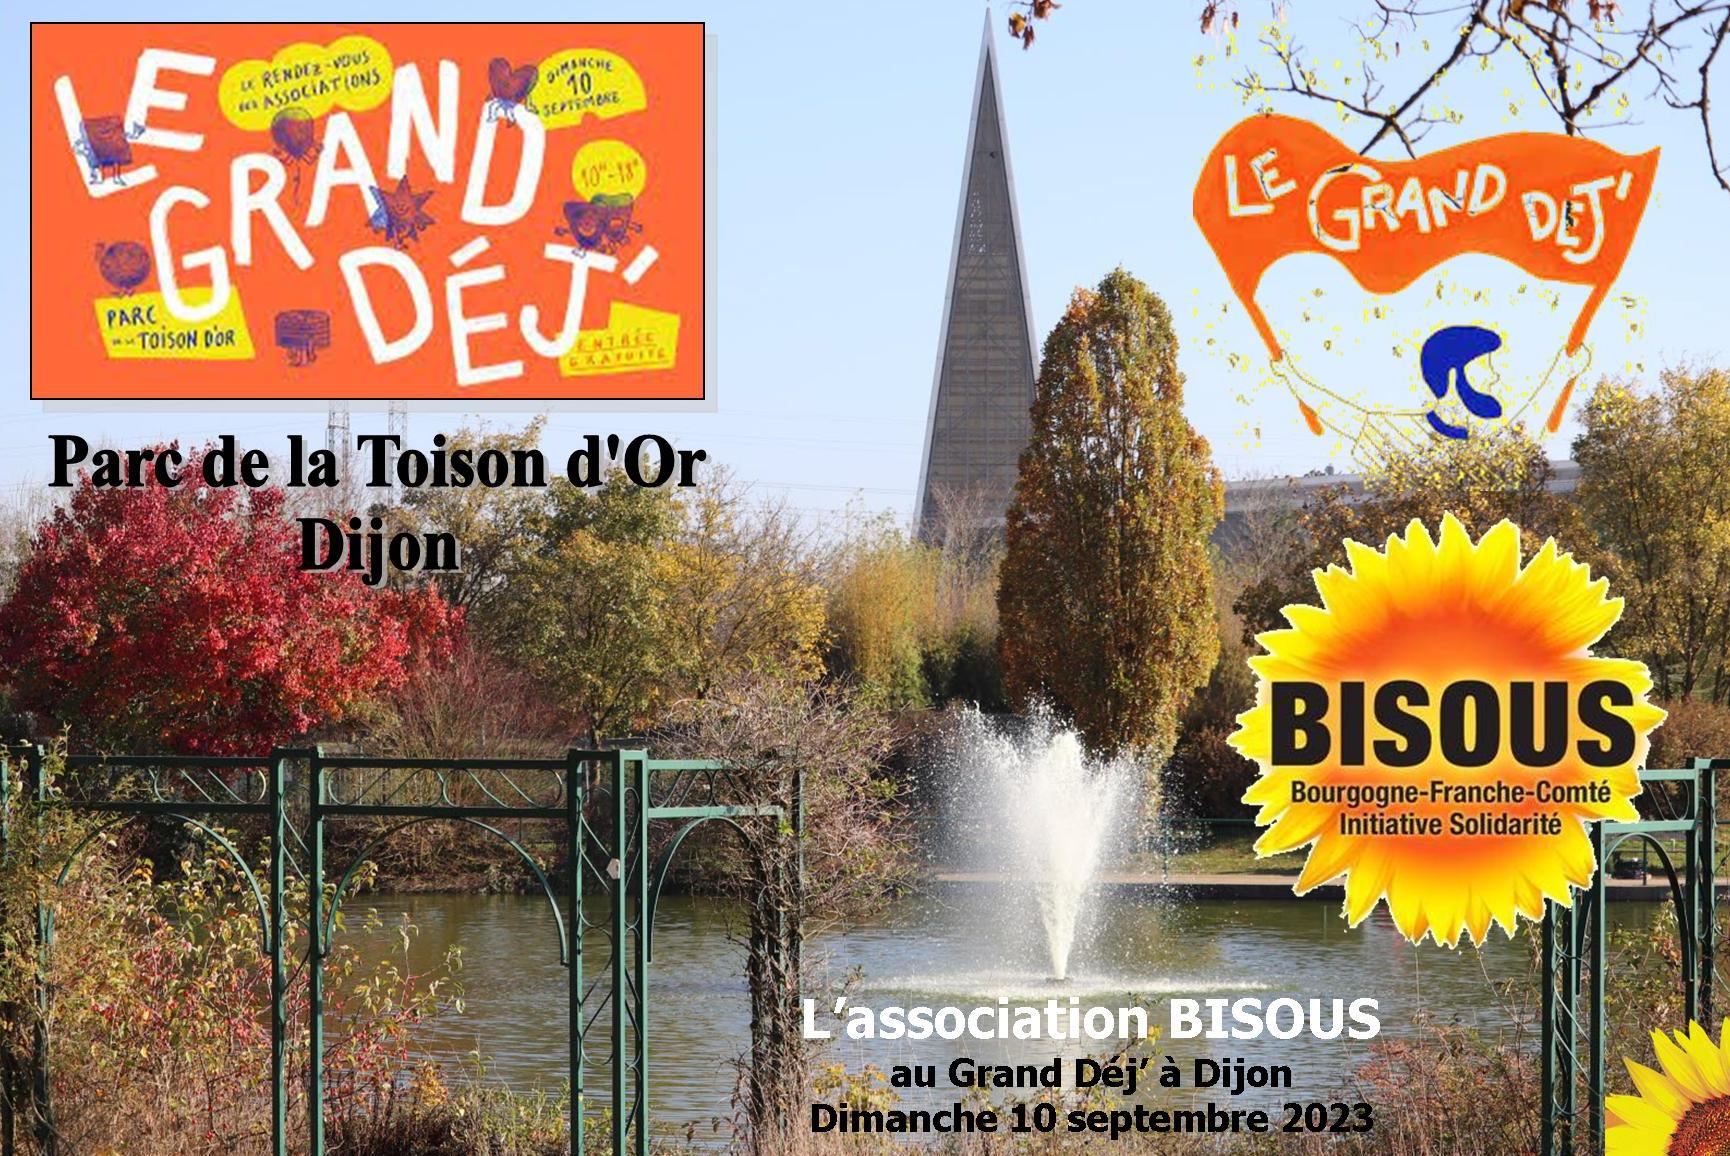 Grand Dej Dijon Bisous 2023 03